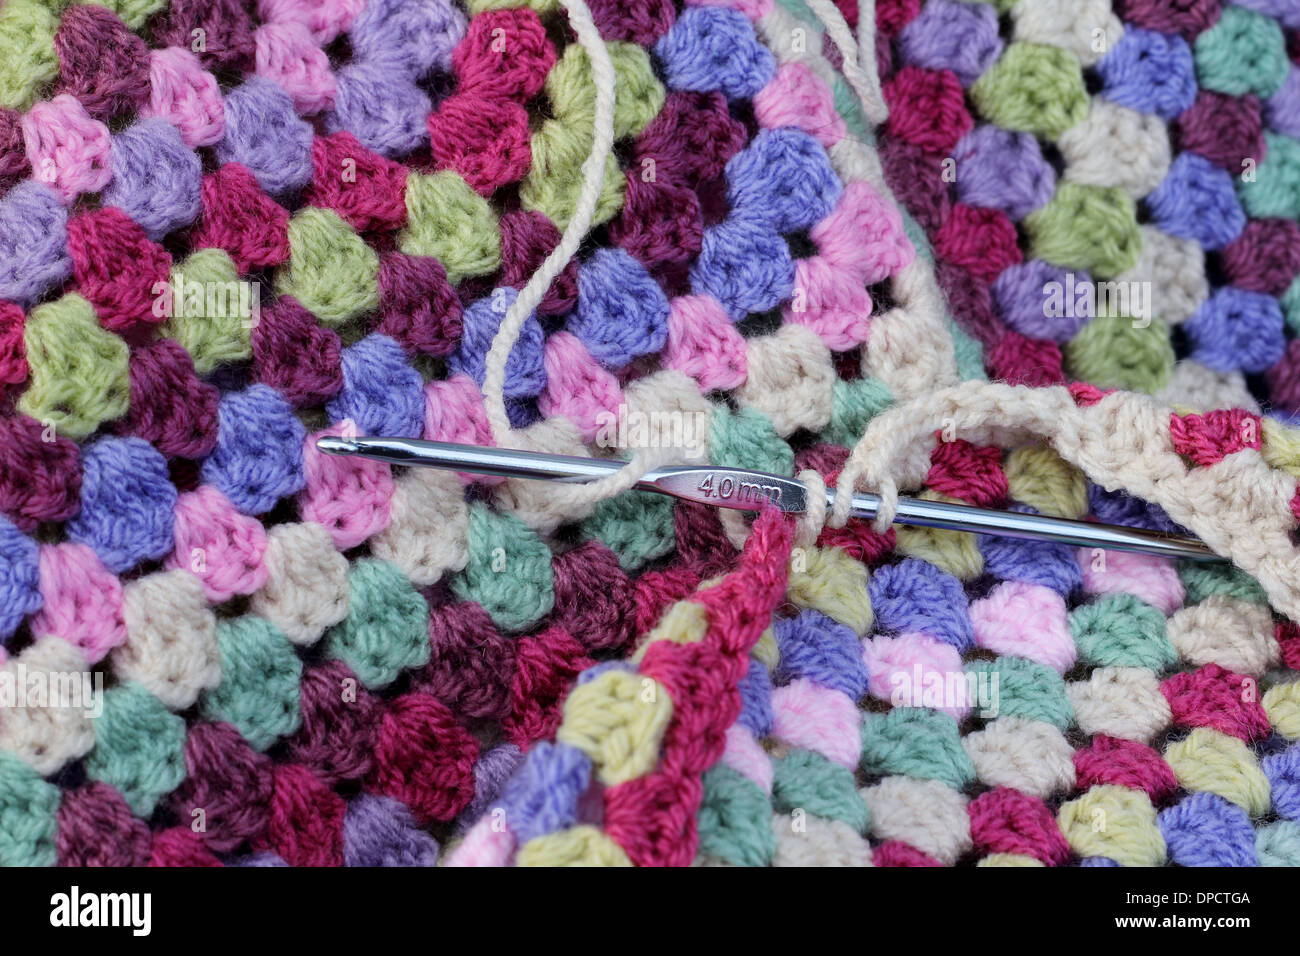 Crochet blanket immagini e fotografie stock ad alta risoluzione - Alamy